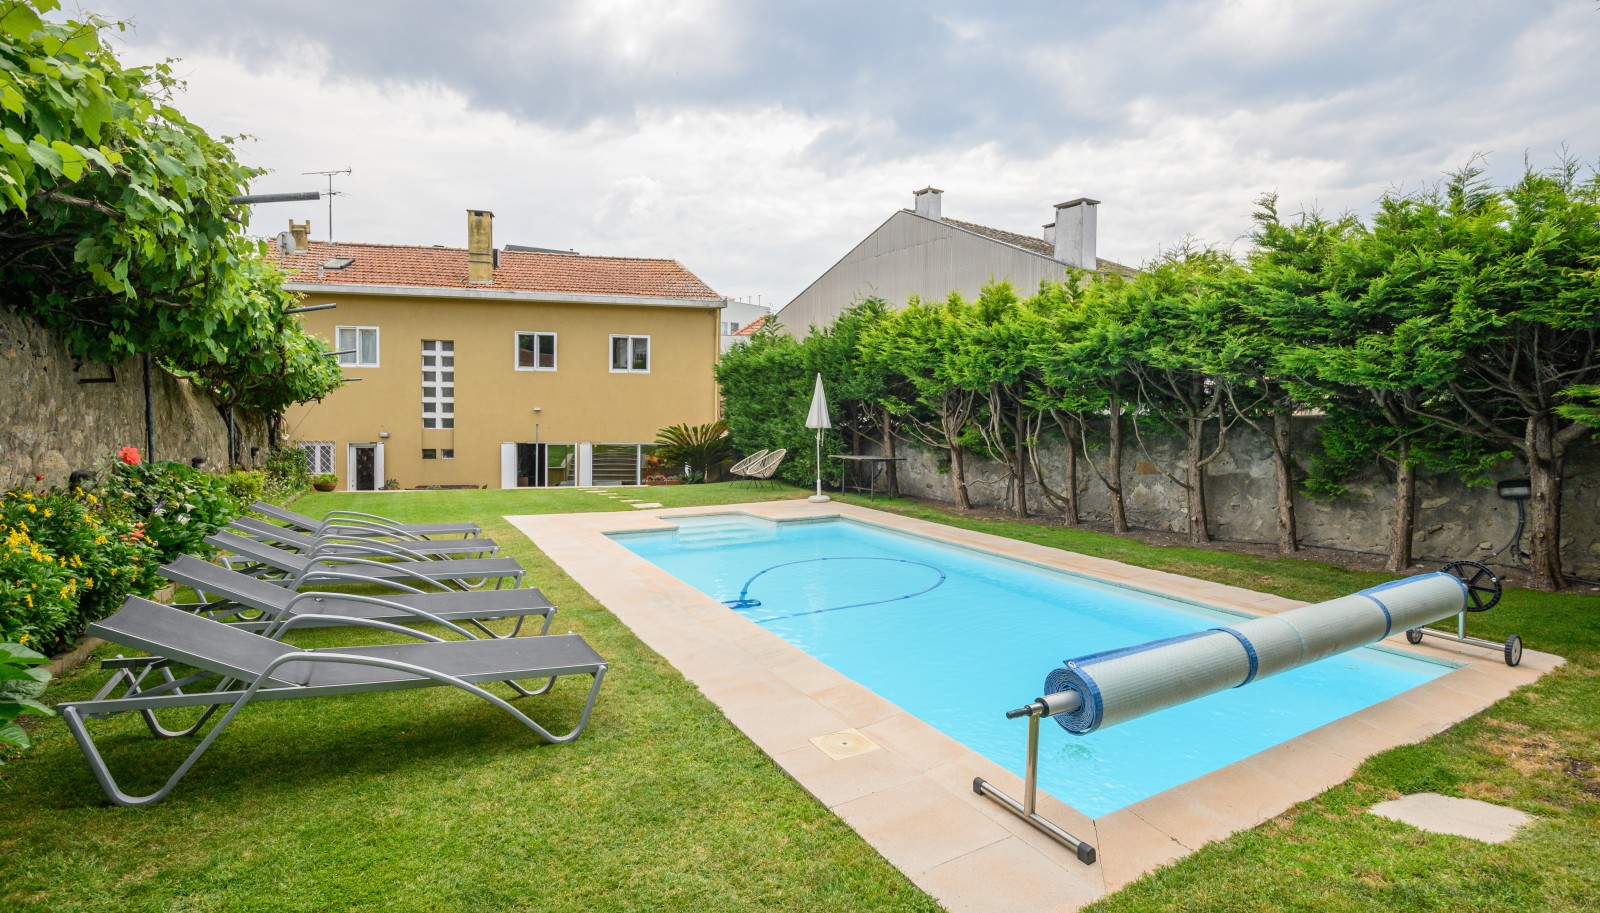 Moradia com piscina e jardim, para venda, em Serralves, Porto_227434